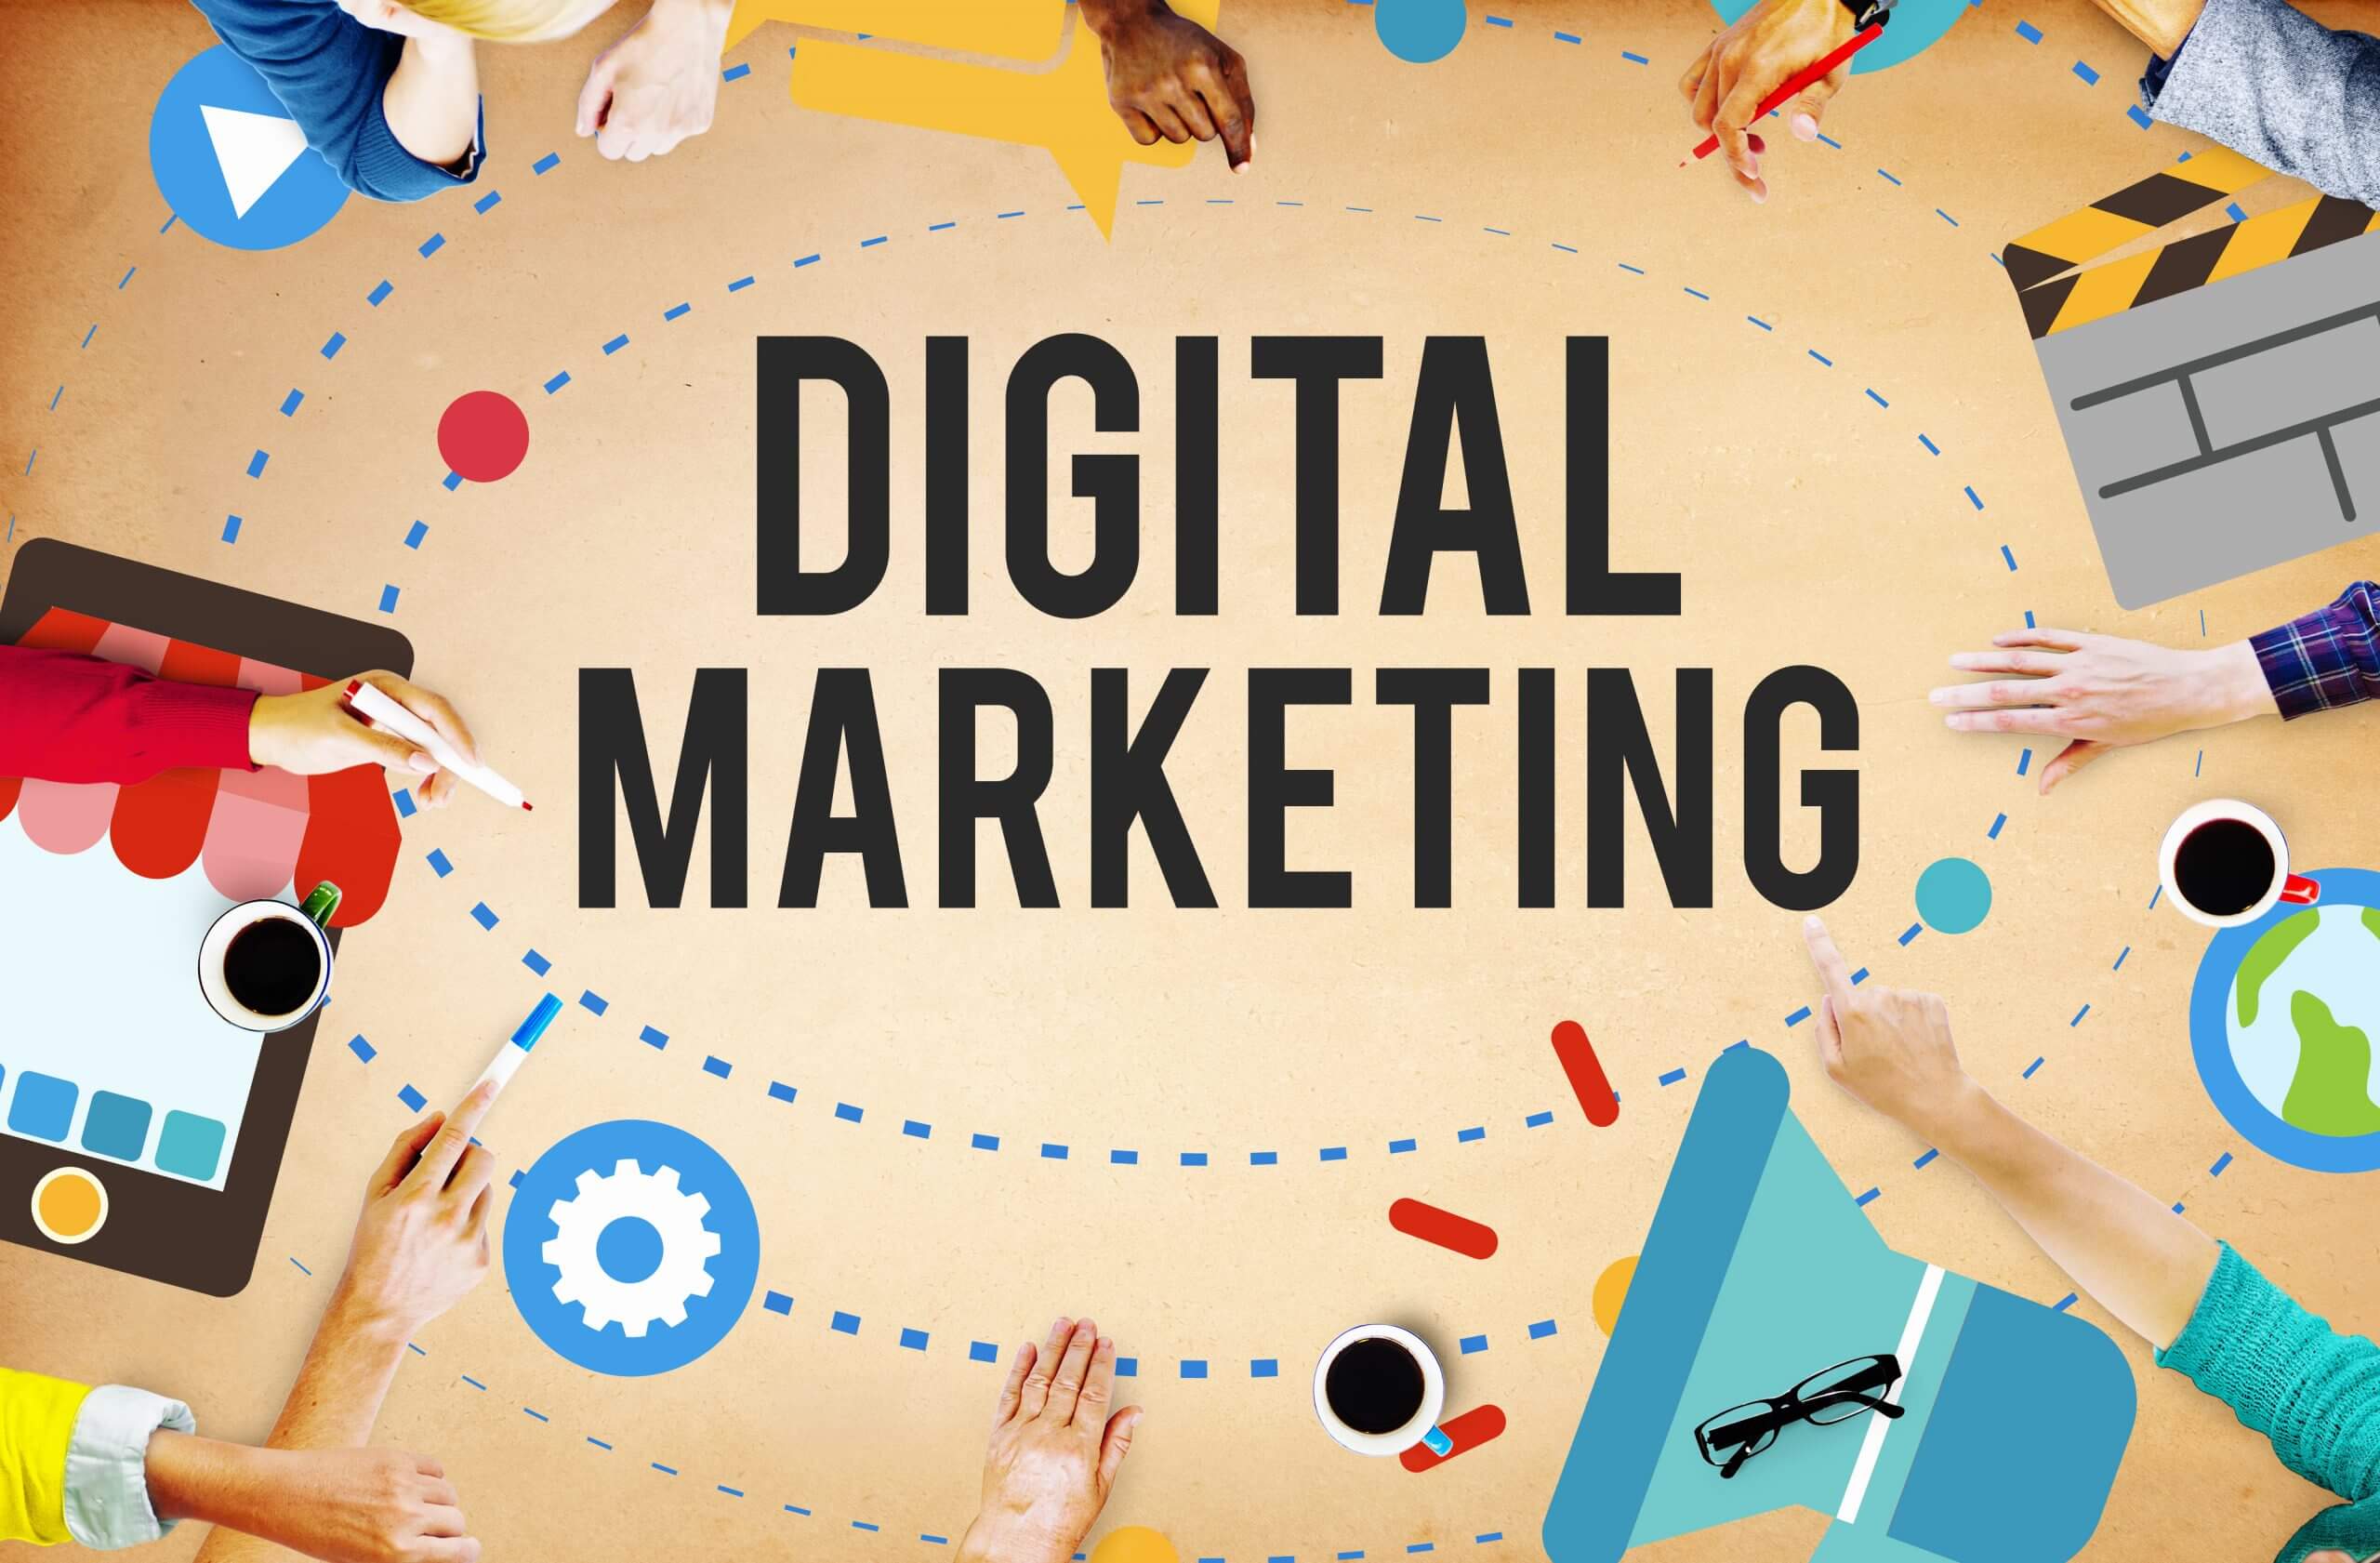 [mách nhỏ] Các hình thức digital marketing phổ biến nhất hiện nay là gì?